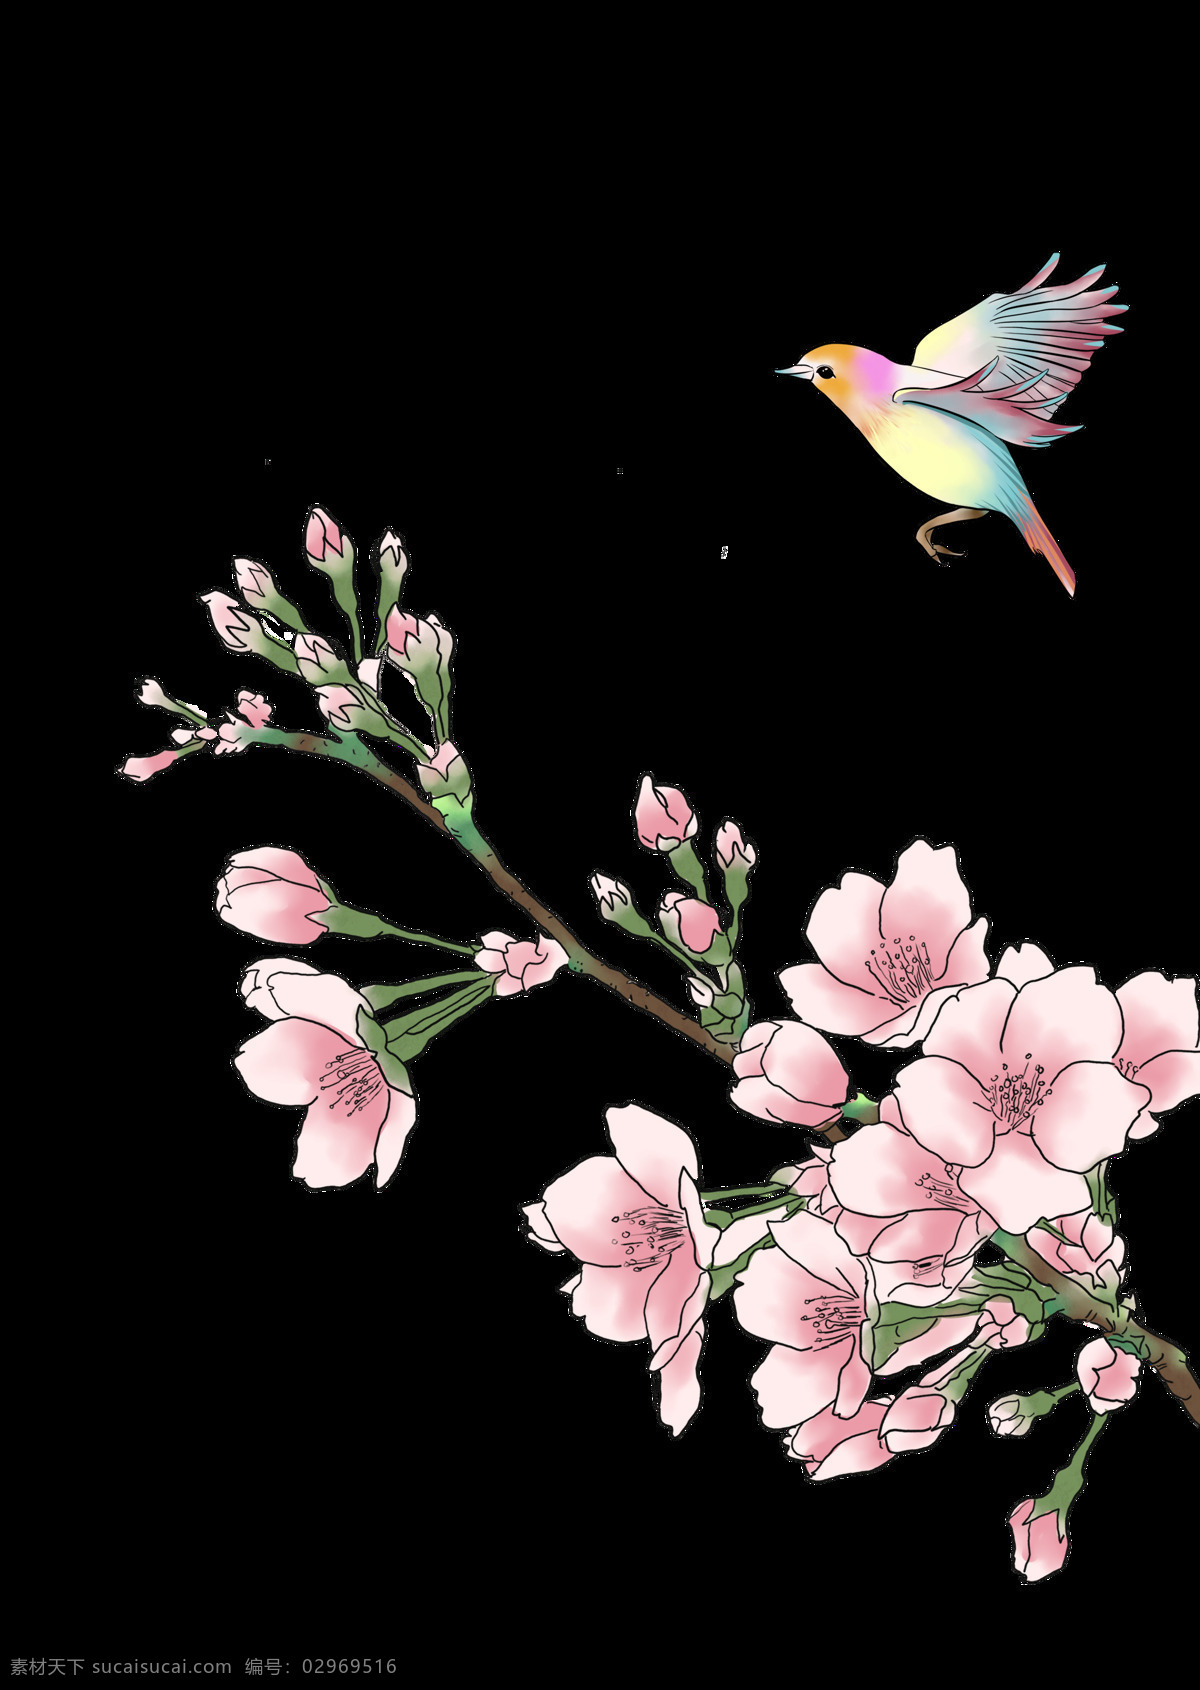 中国 古风 传统 花鸟 图案 中国风 传统绘画 工笔画 植物 花朵 树枝 创意 装饰图案 绿叶 精美 水彩绘画